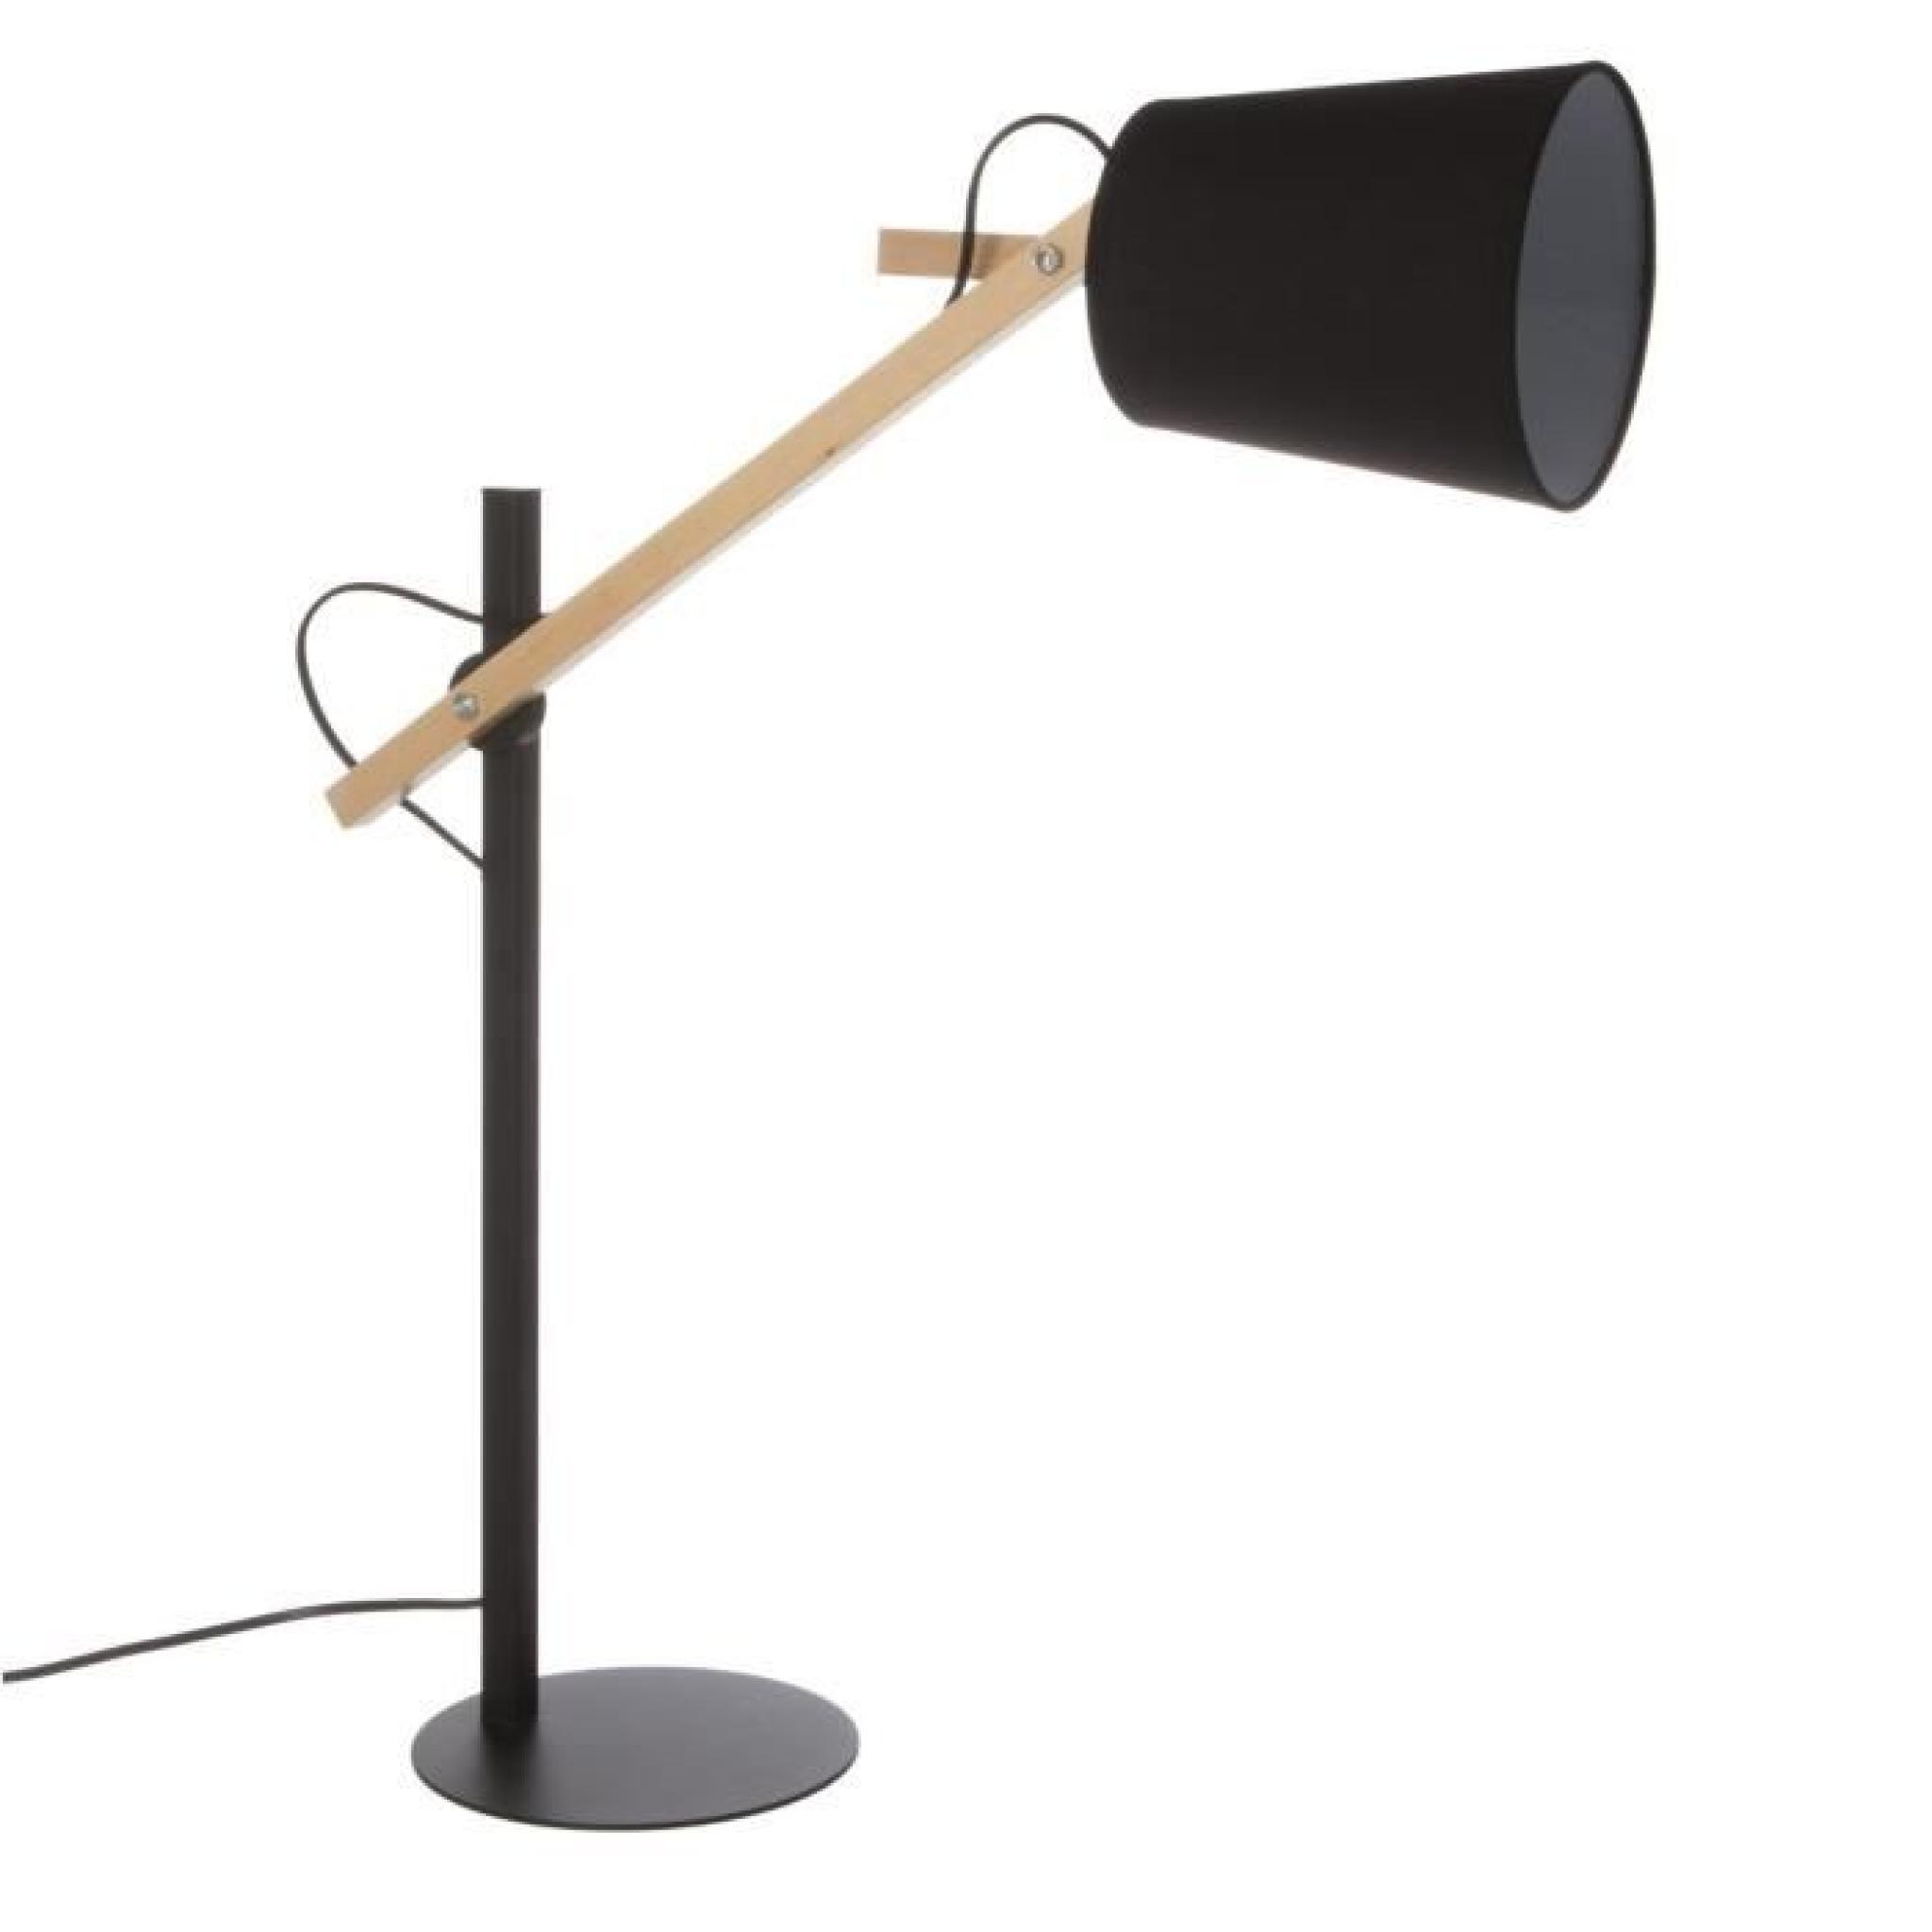 Lampe de table en métal et bois avec bras articulé. Hauteur 65 cm